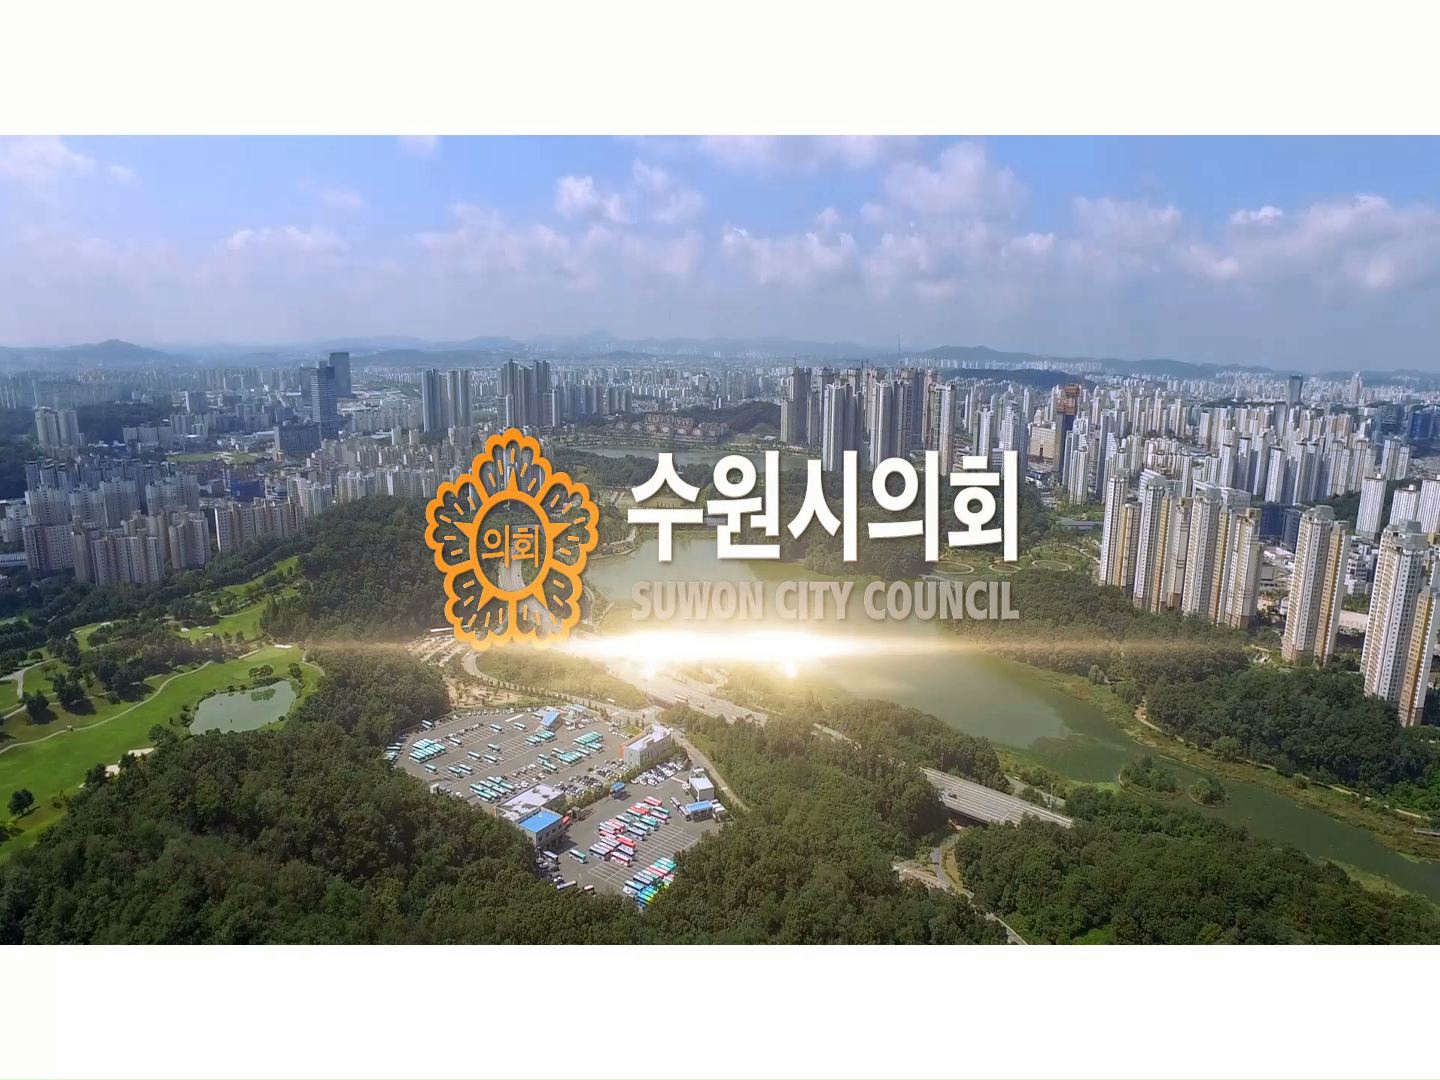 2018년 제11대 수원시의회 홍보영상